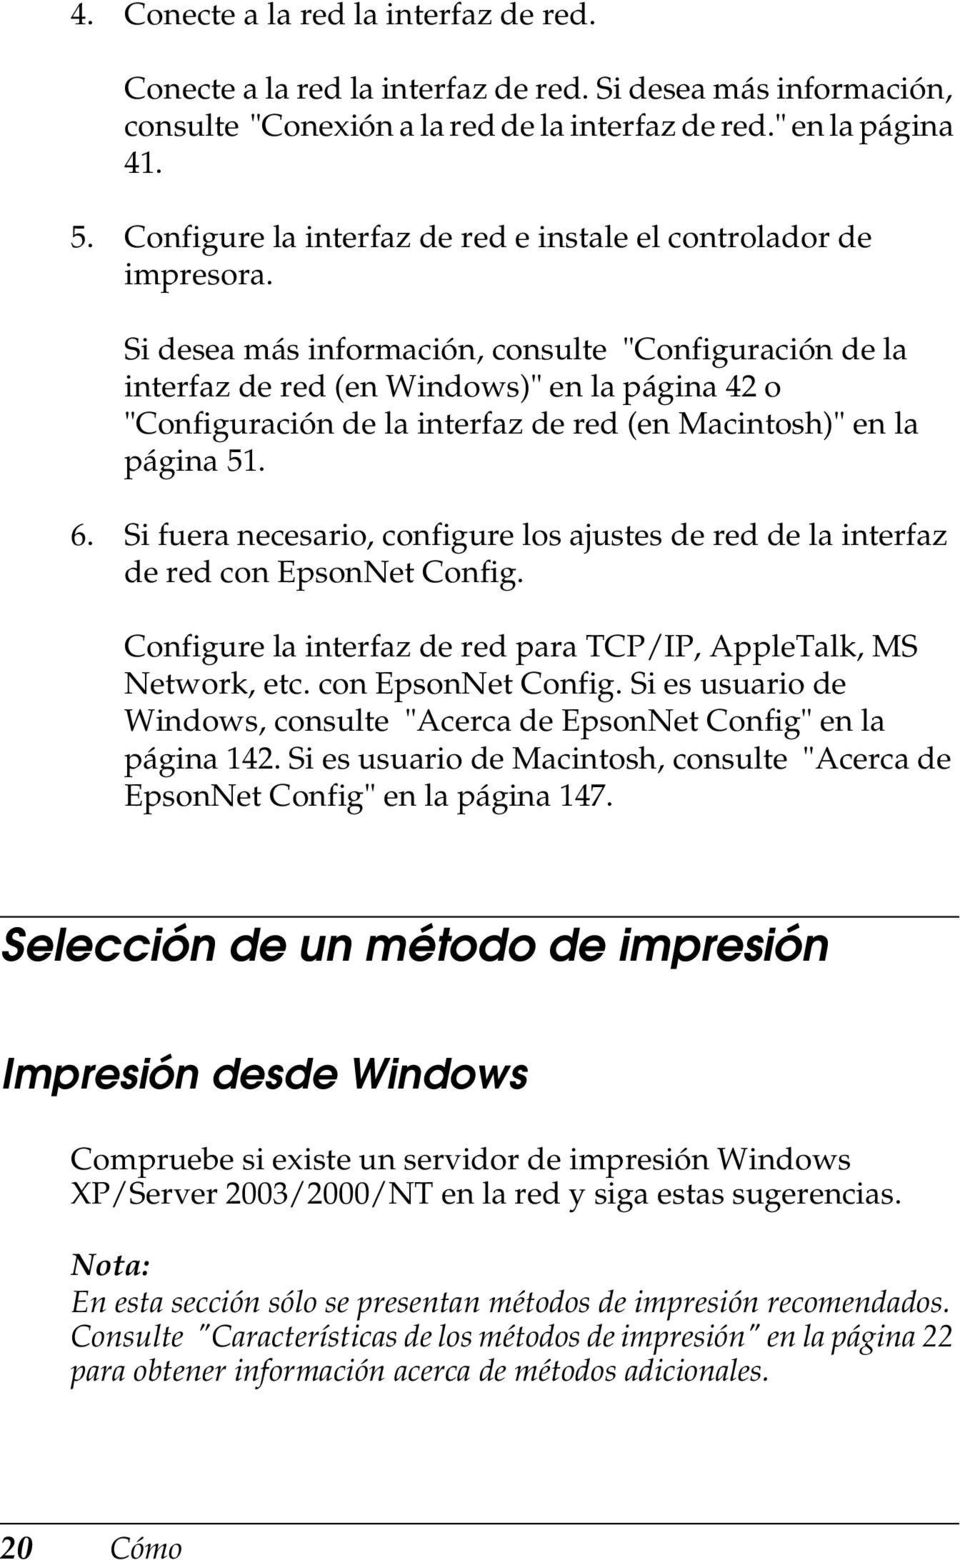 Si desea más información, consulte "Configuración de la interfaz de red (en Windows)" en la página 4 o "Configuración de la interfaz de red (en Macintosh)" en la página 51. 6.